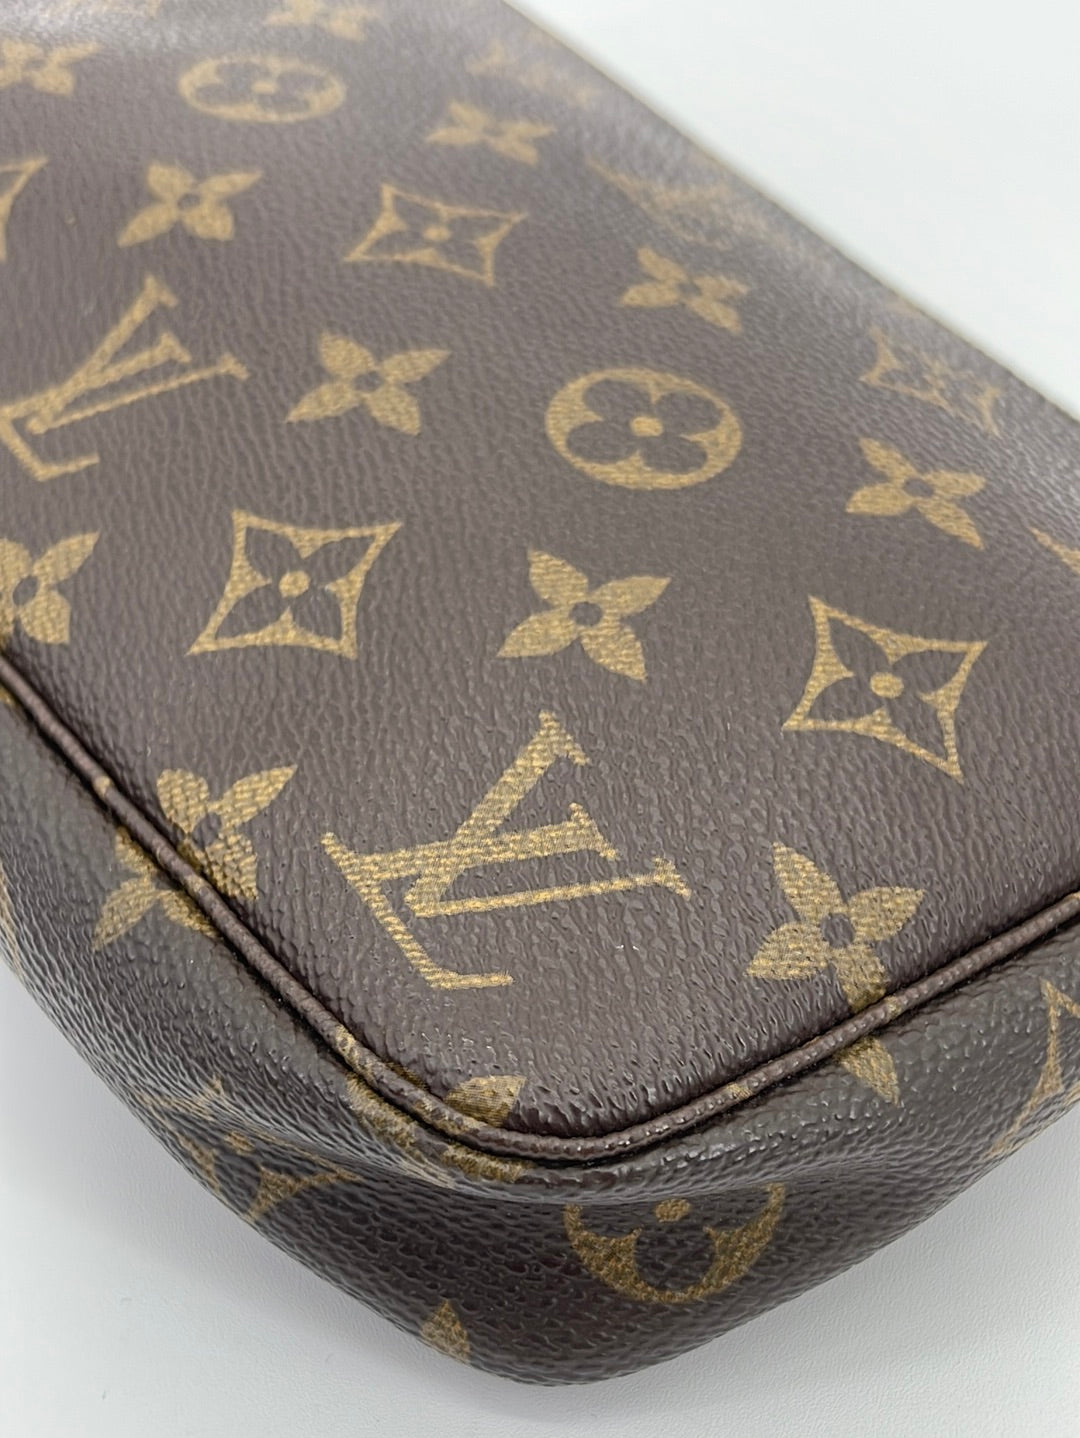 PRELOVED Louis Vuitton Monogram Accessories Pochette Bag SD0081 041923 –  KimmieBBags LLC